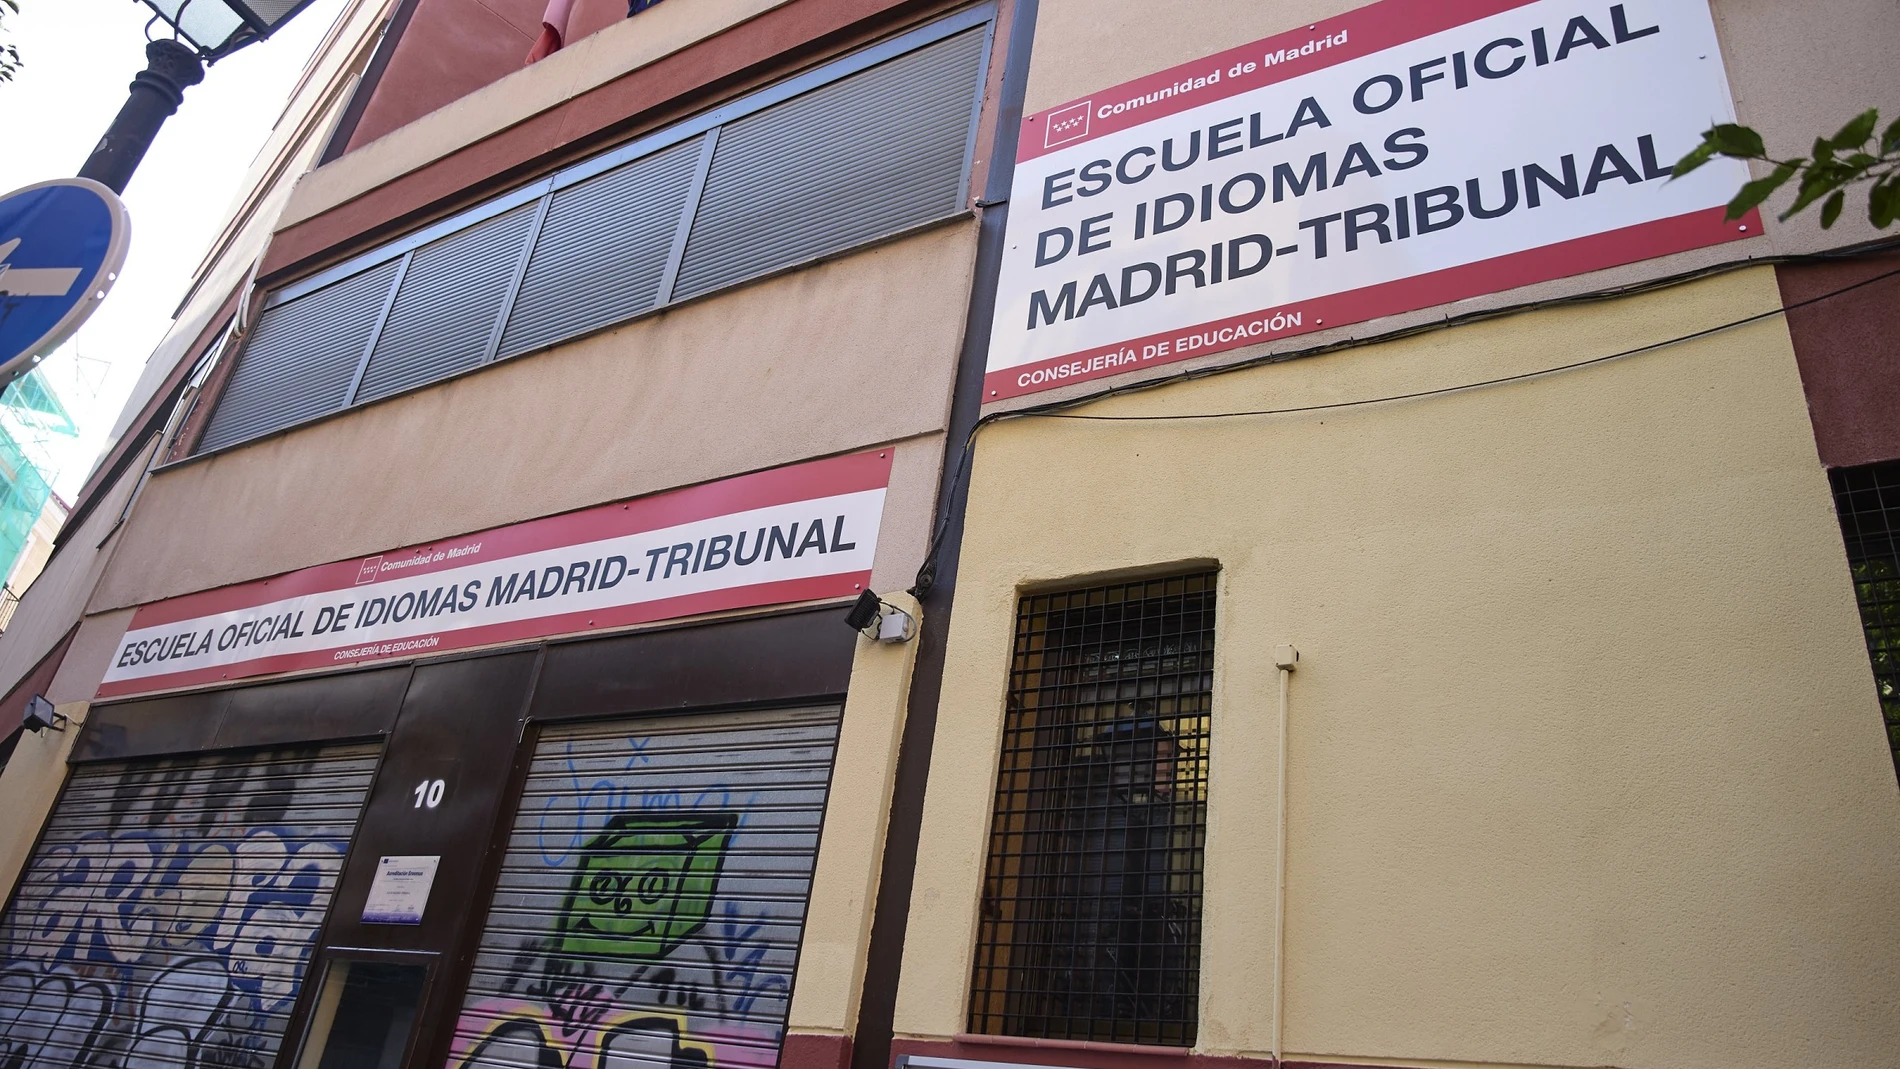 Fachada de la Escuela Oficial de Idiomas Madrid-Tribunal, situada en la calle de Santa. Brígida